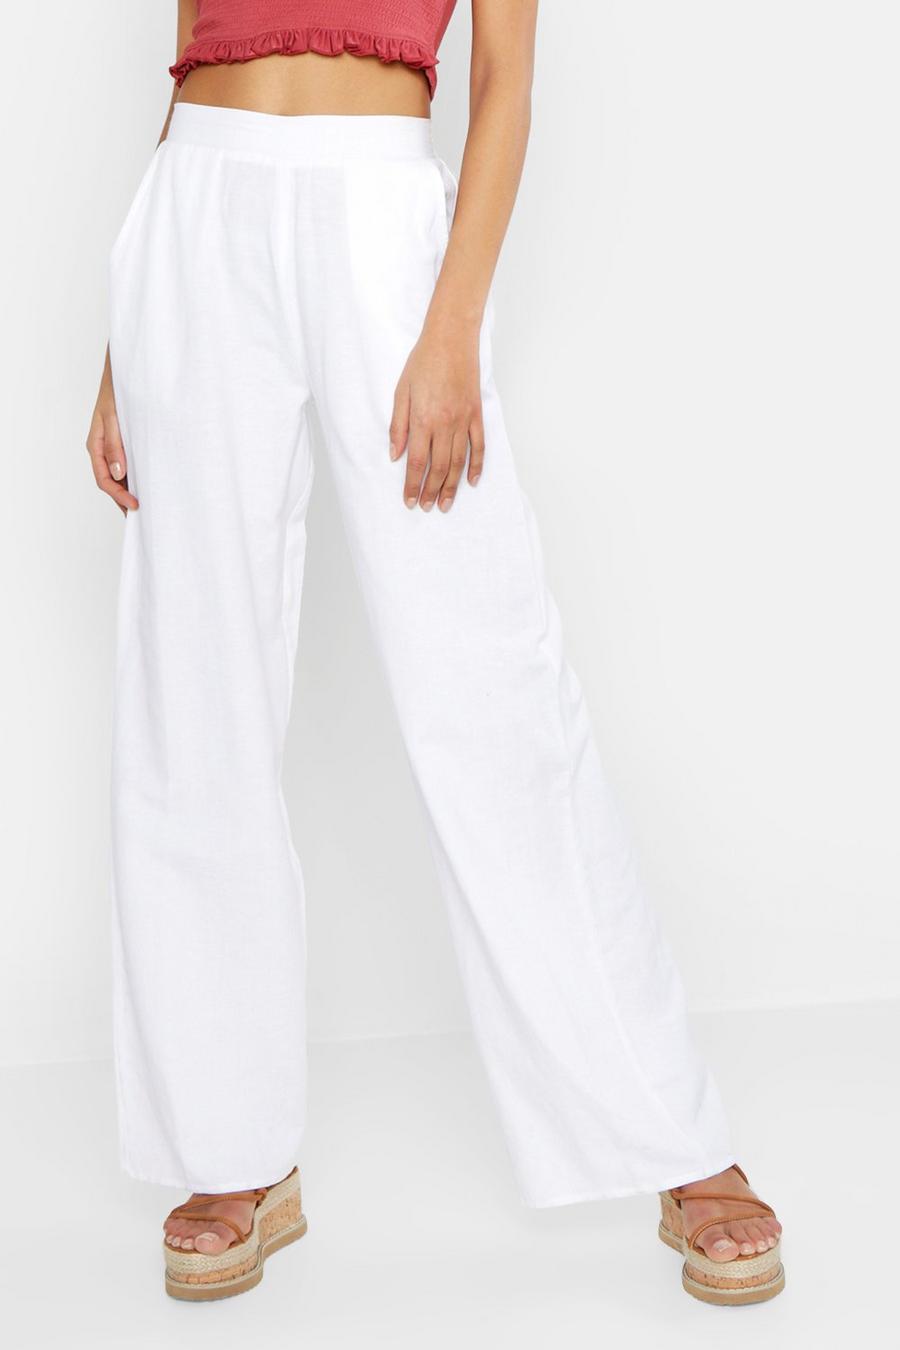 LTS Tall Women's White Linen Feel Wide Leg Trousers